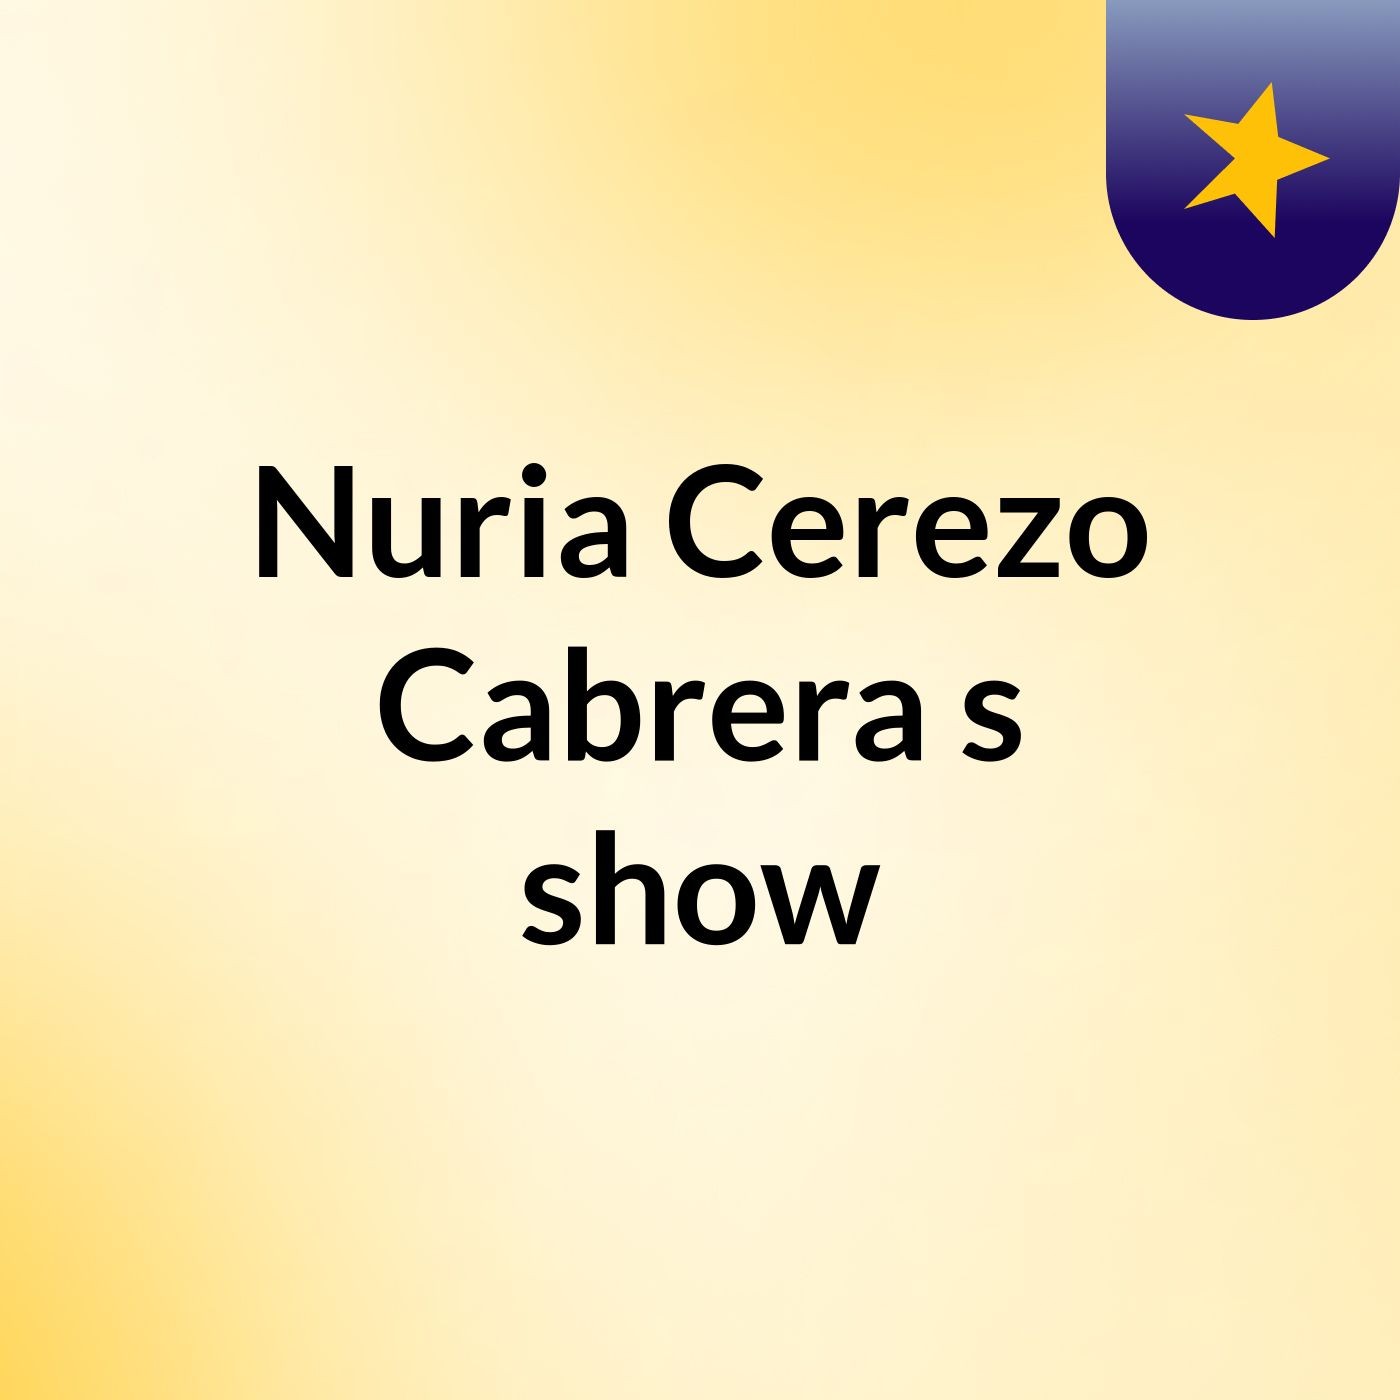 Nuria Cerezo Cabrera's show